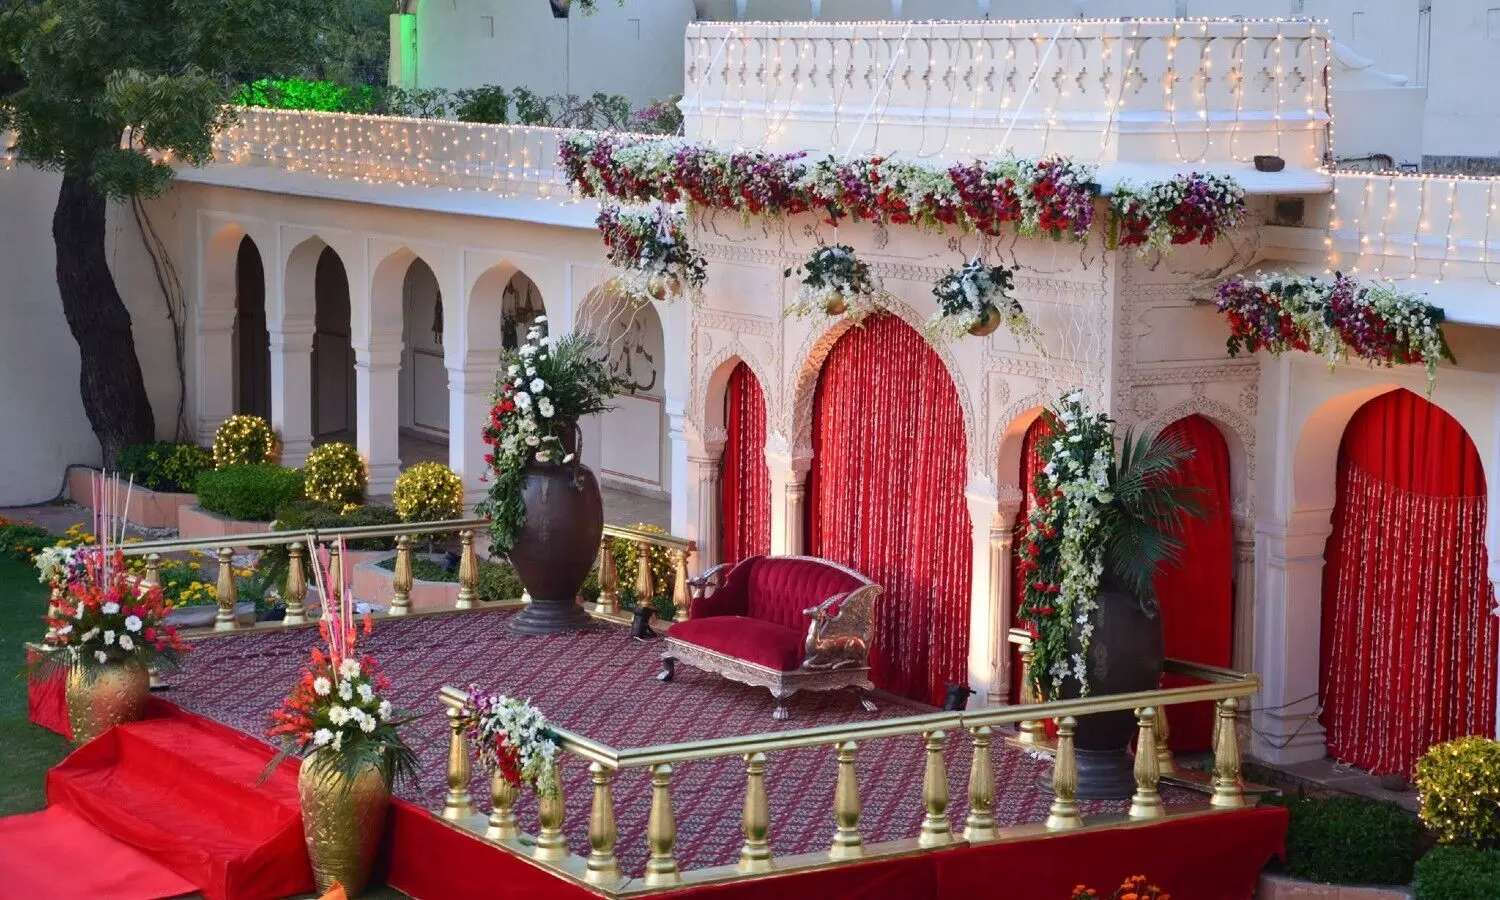 Destination Wedding in Jaipur: डेस्टिनेशन वेडिंग के लिए जयपुर बेस्ट जगह, यहां सच होगा शादी का सपना